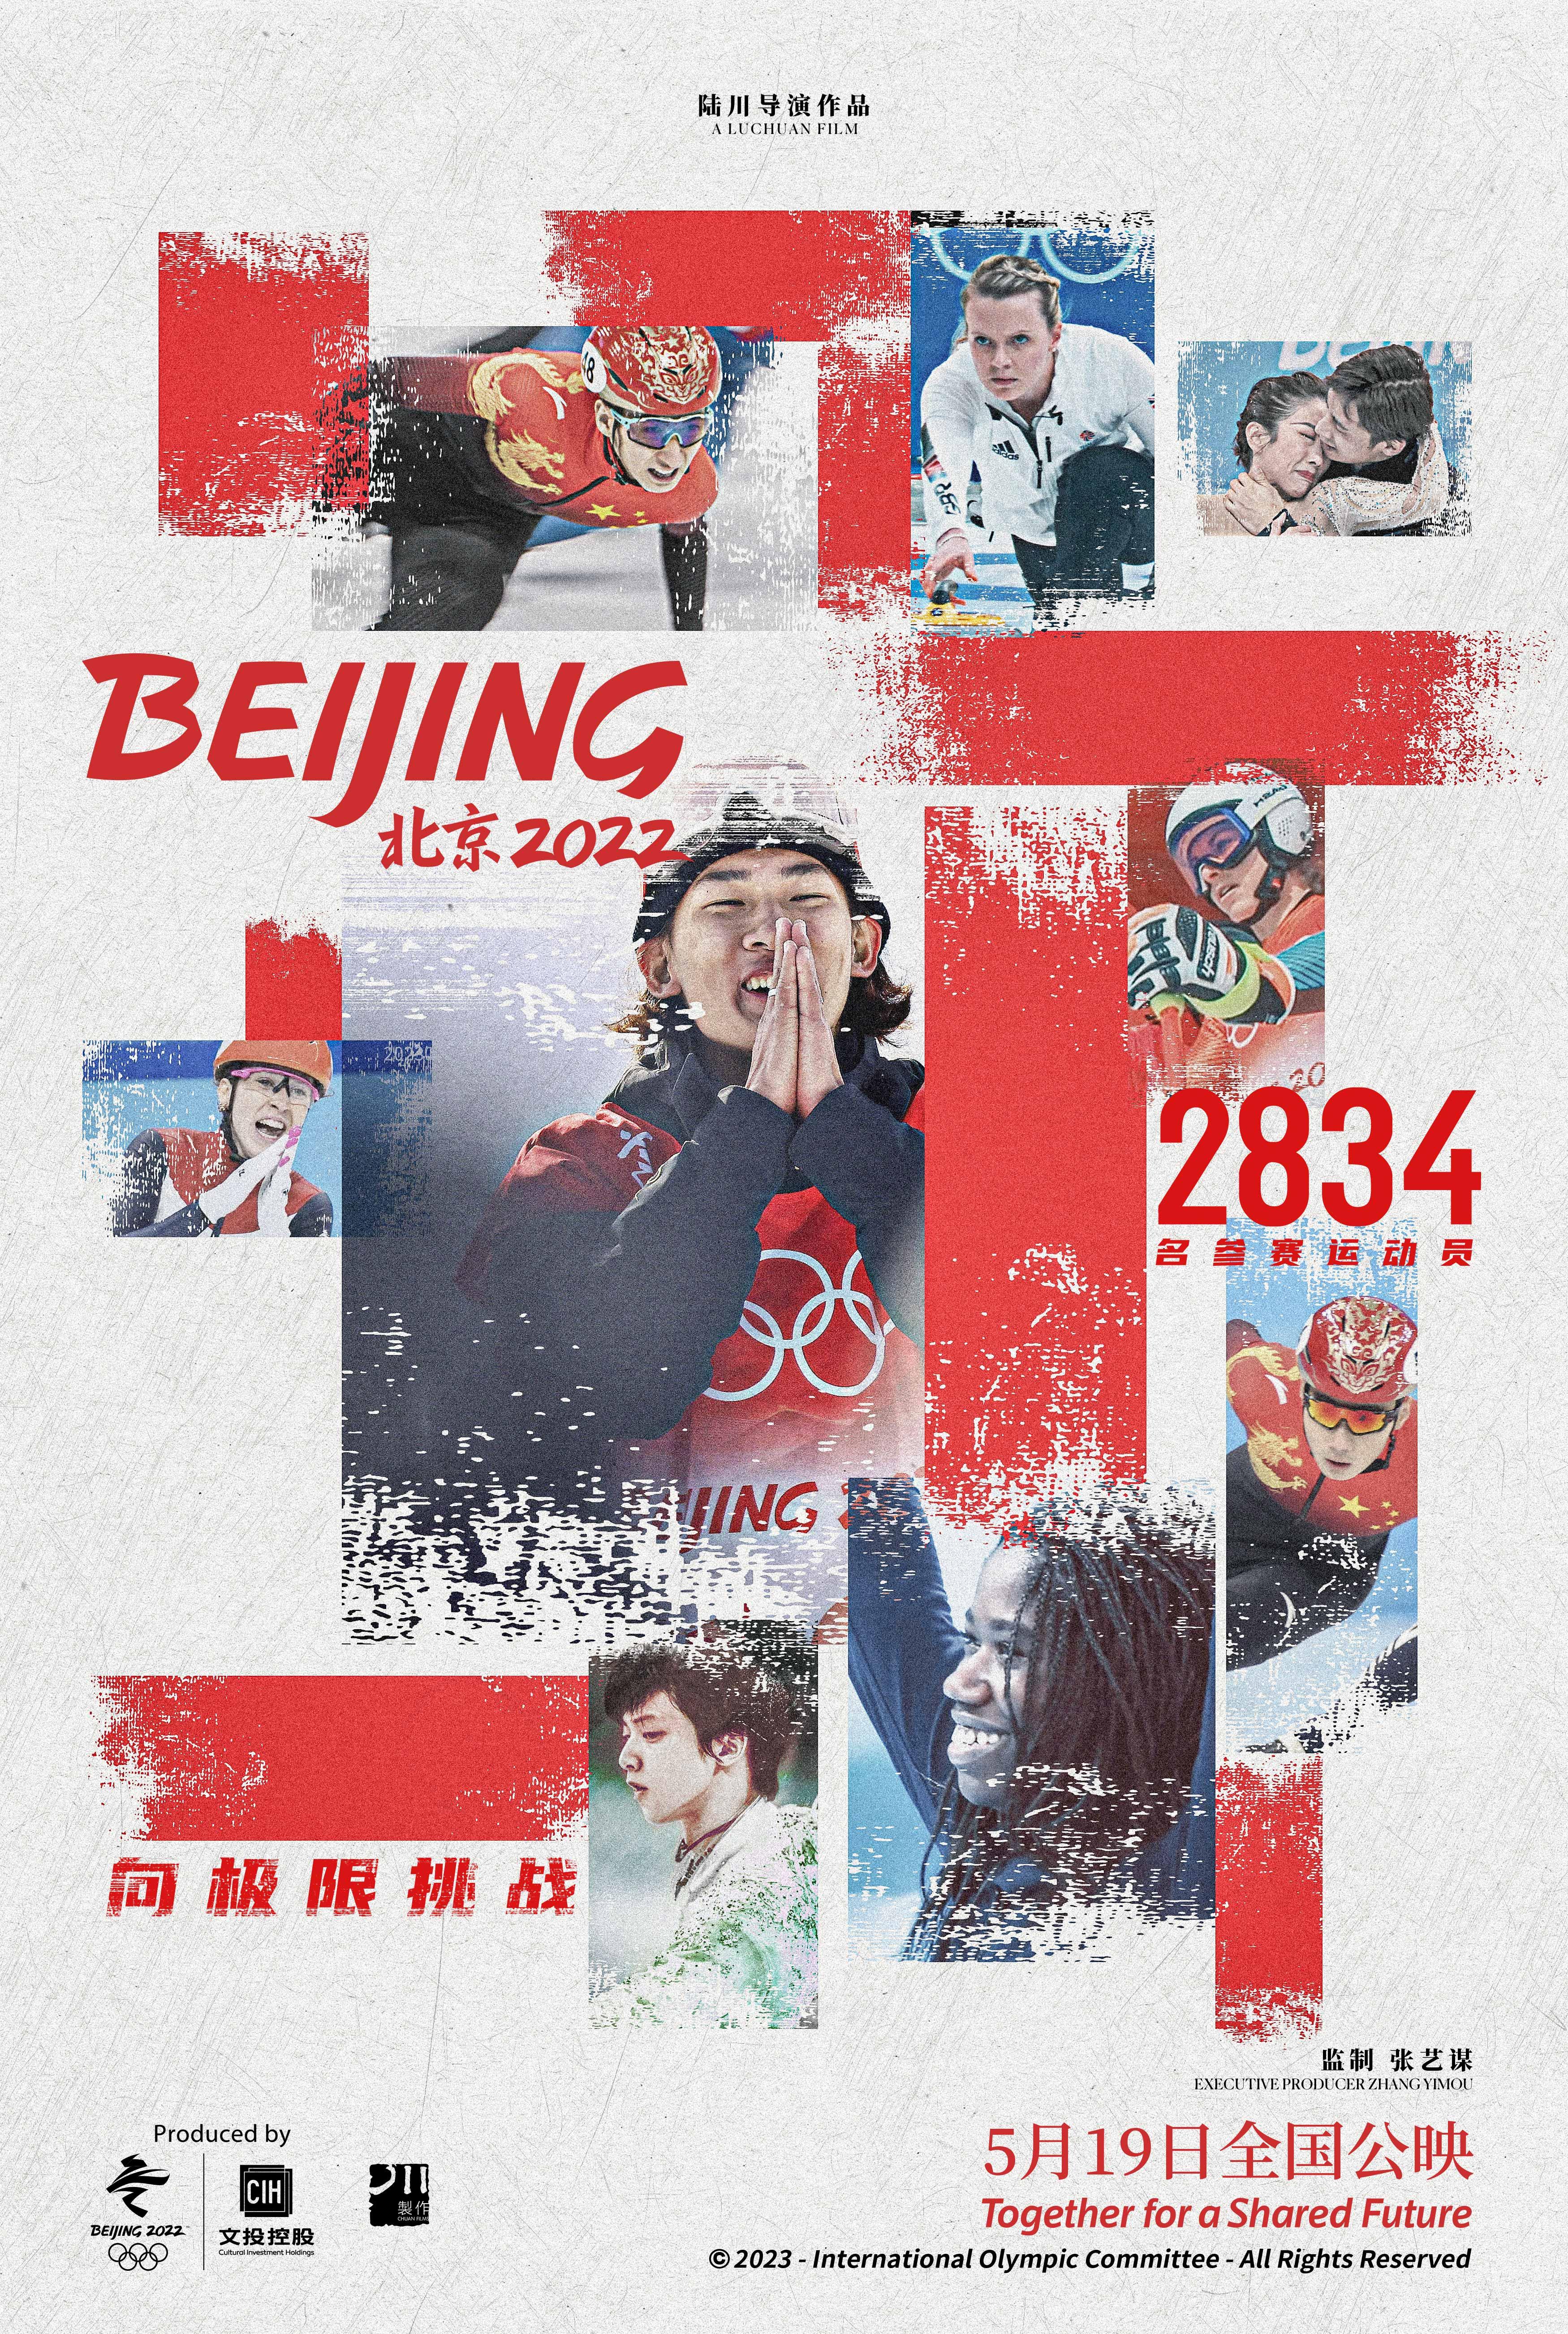 电影《北京2022》发布群像海报,致敬每一位冬奥人